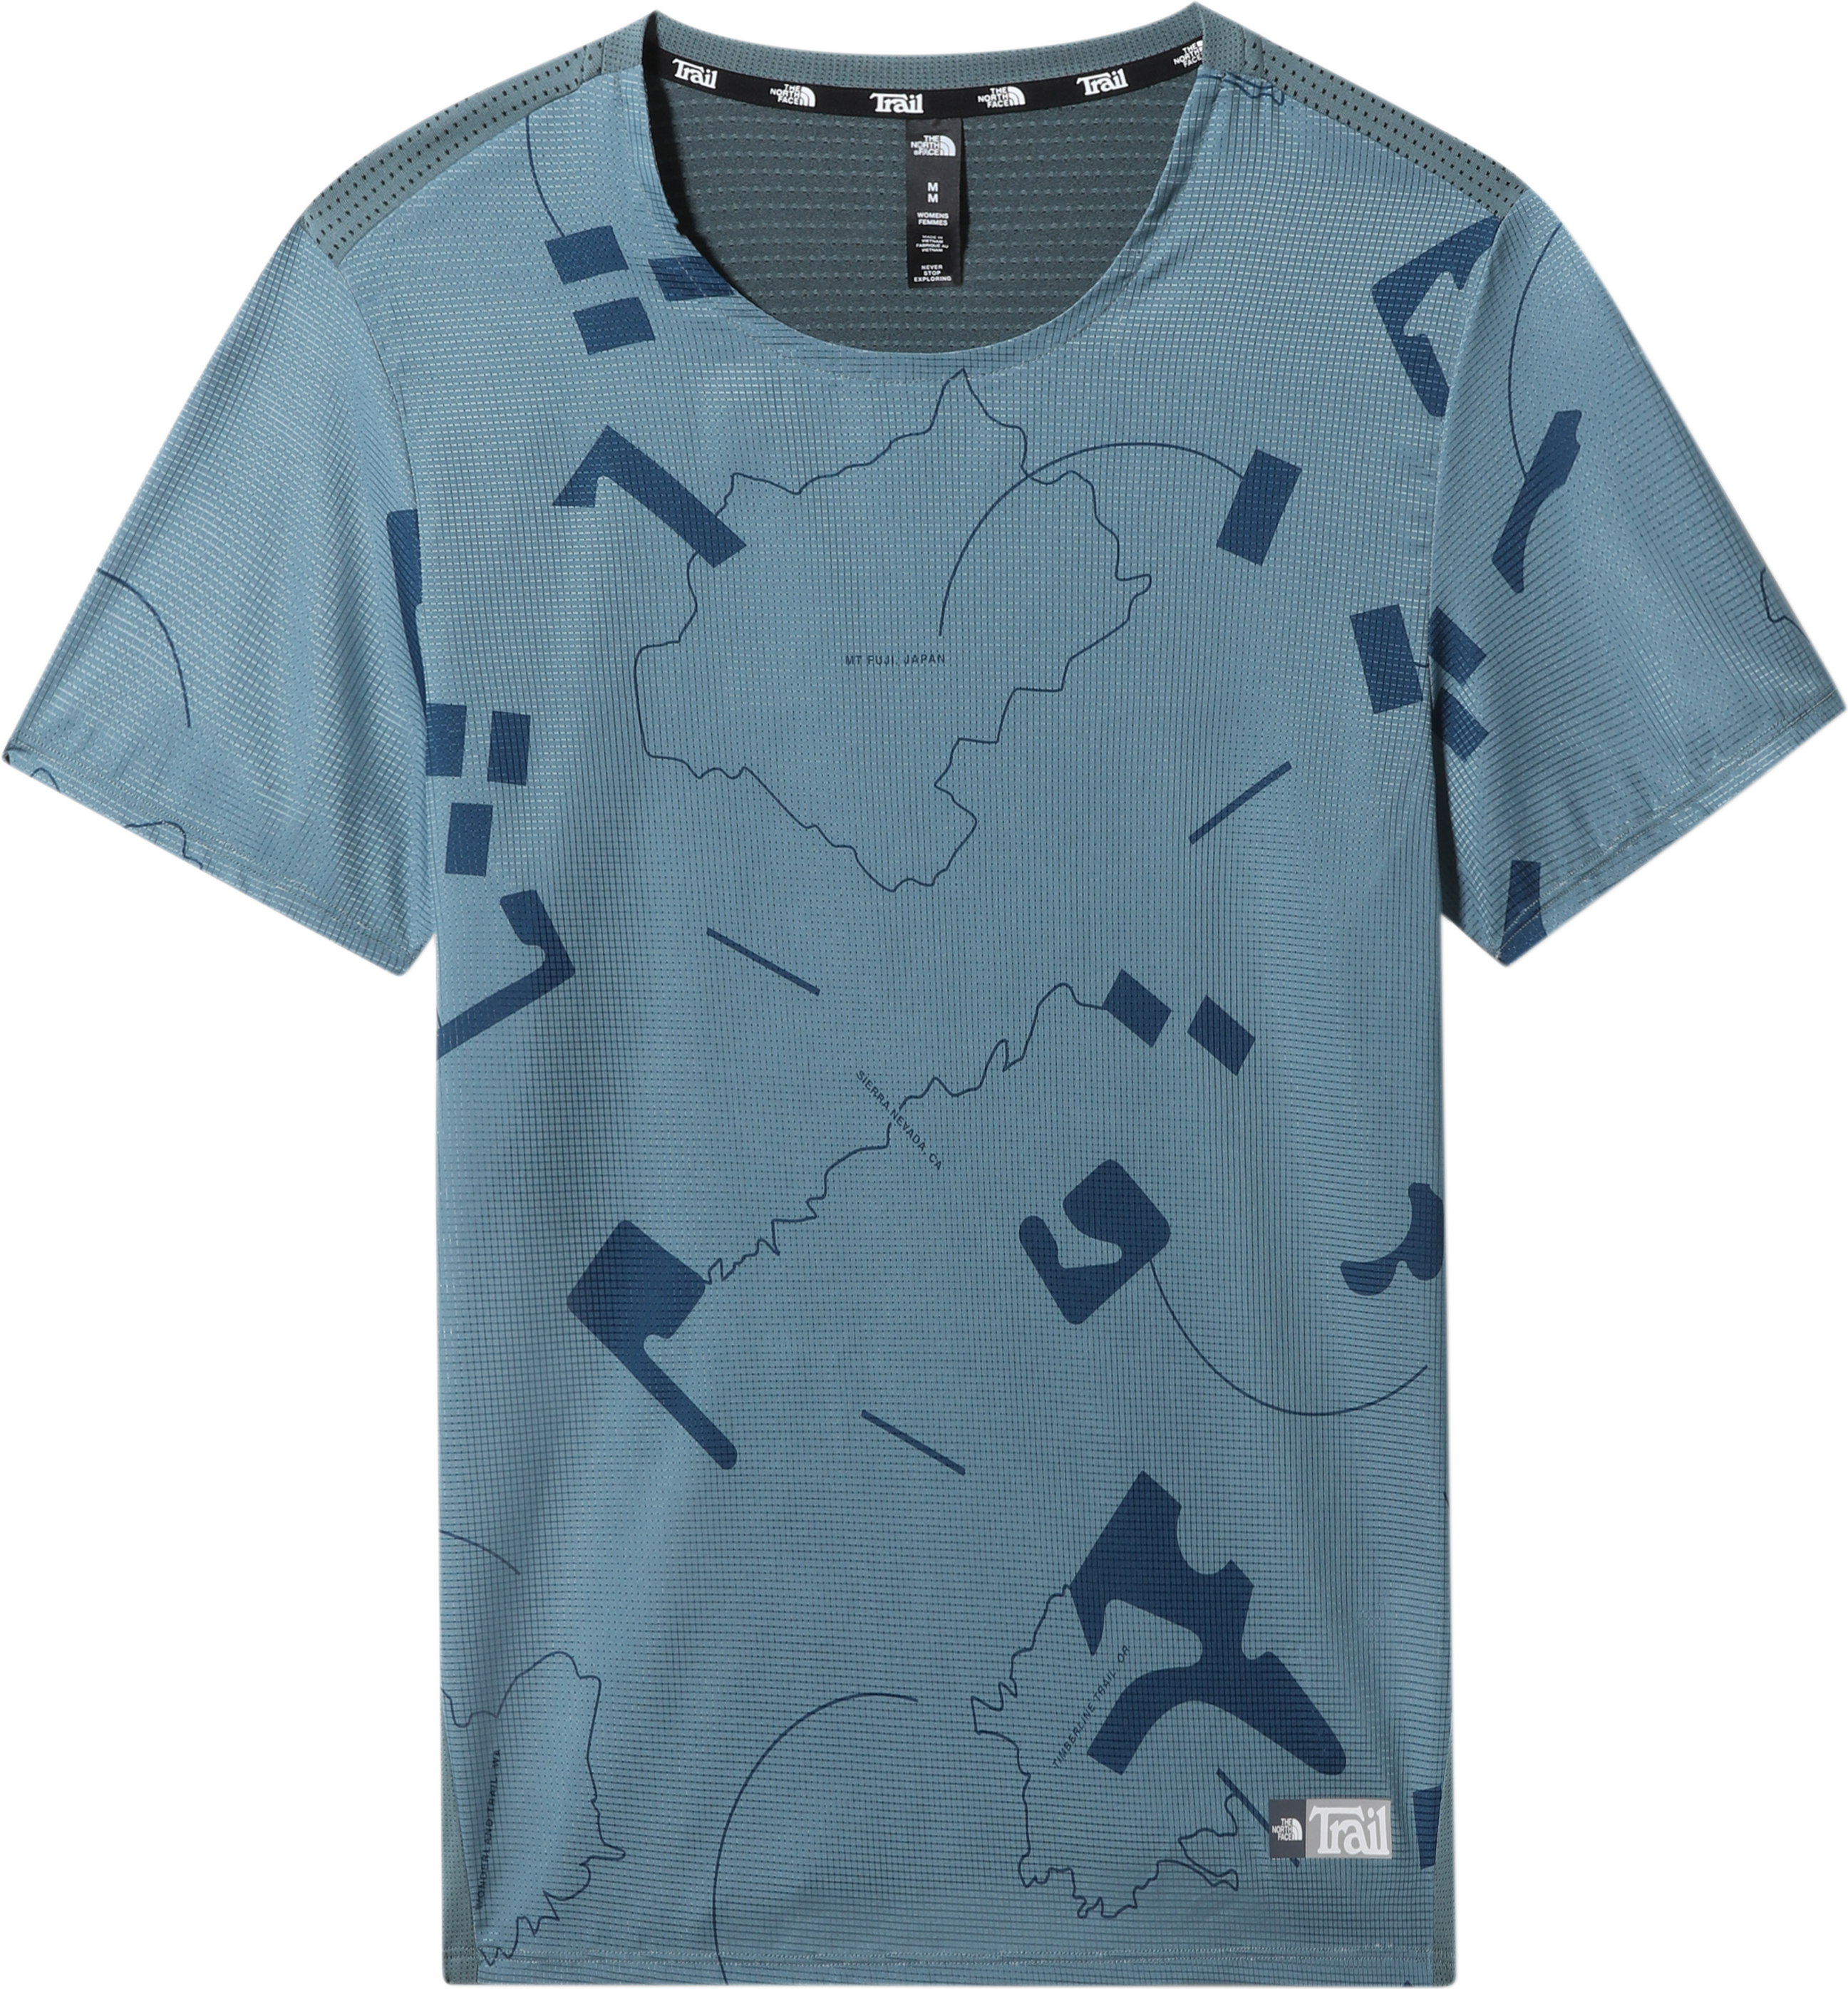 Men's Printed Sunriser Short Sleeve Shirt Goblin Blue Trail Marker Print